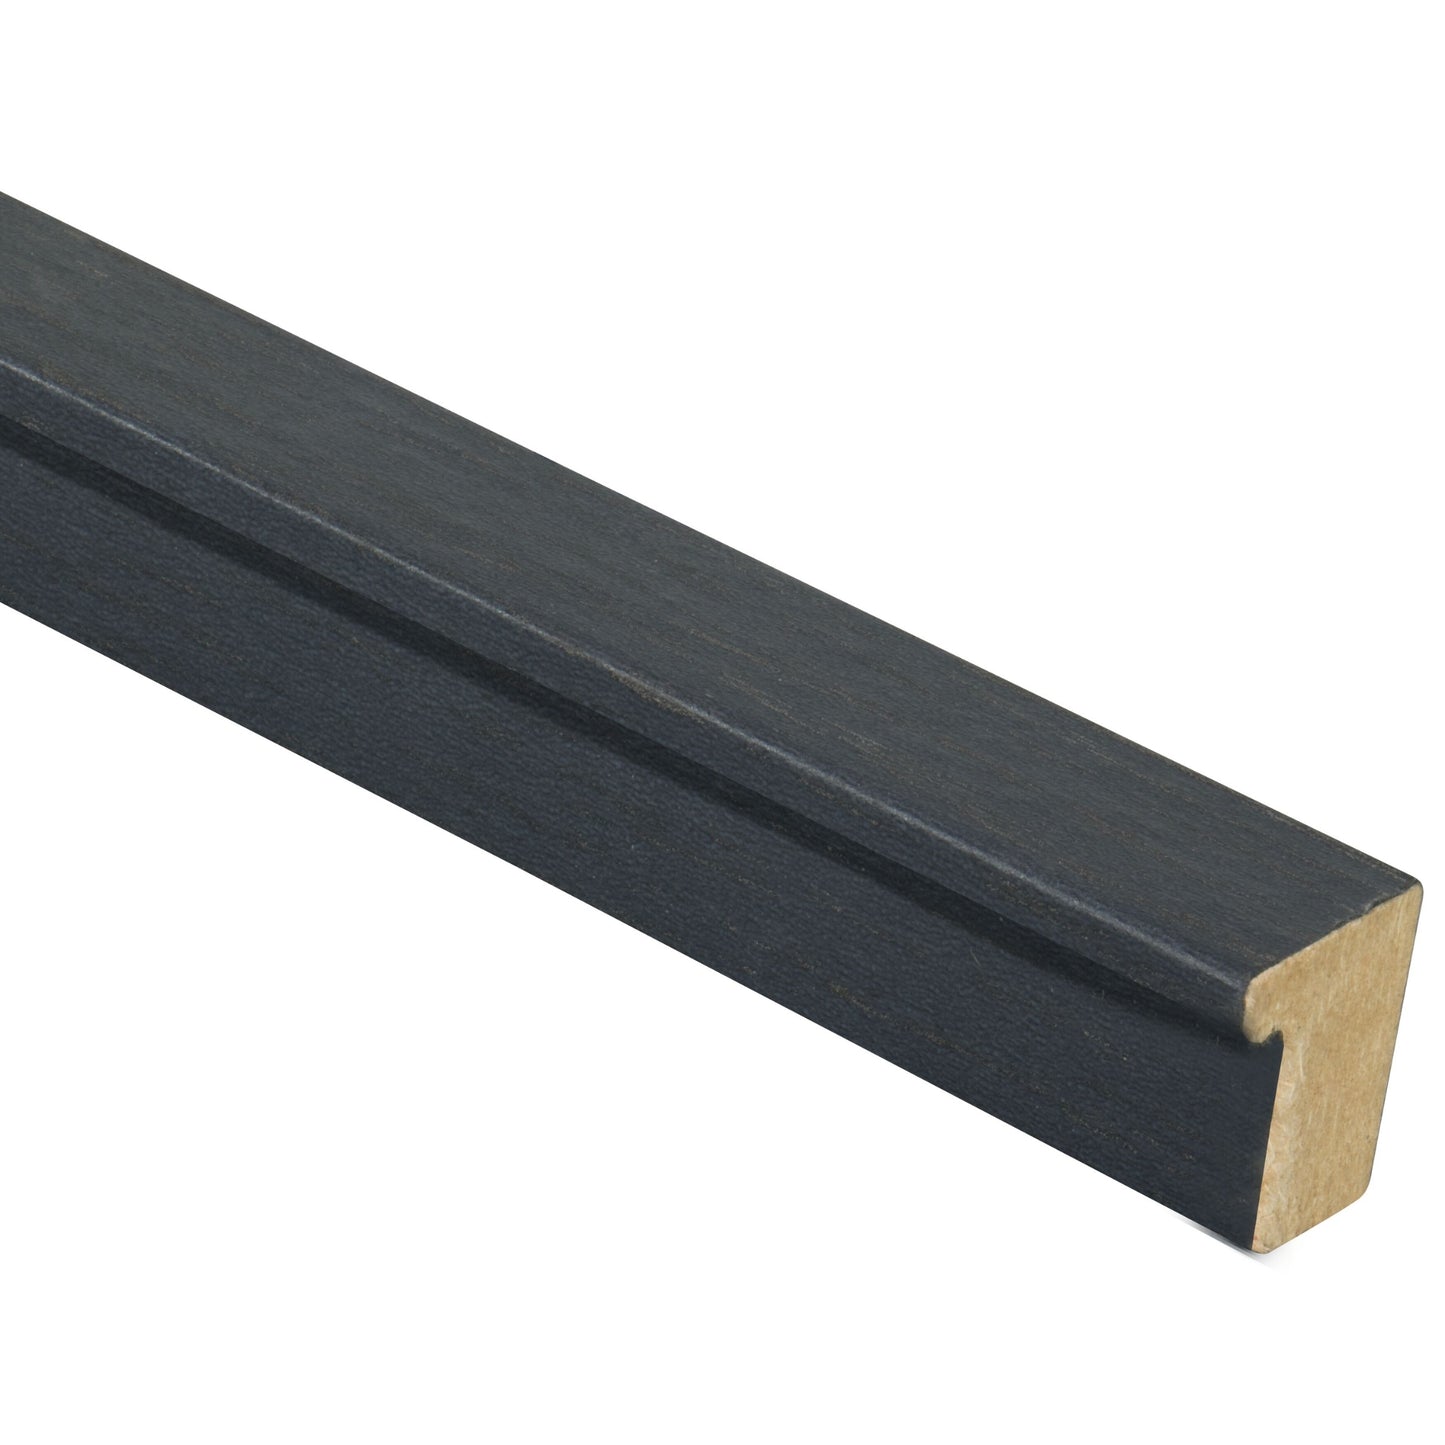 Rovere Black Premium Acoustic Wood Wall Panel End Bar Piece Trim - 260cm